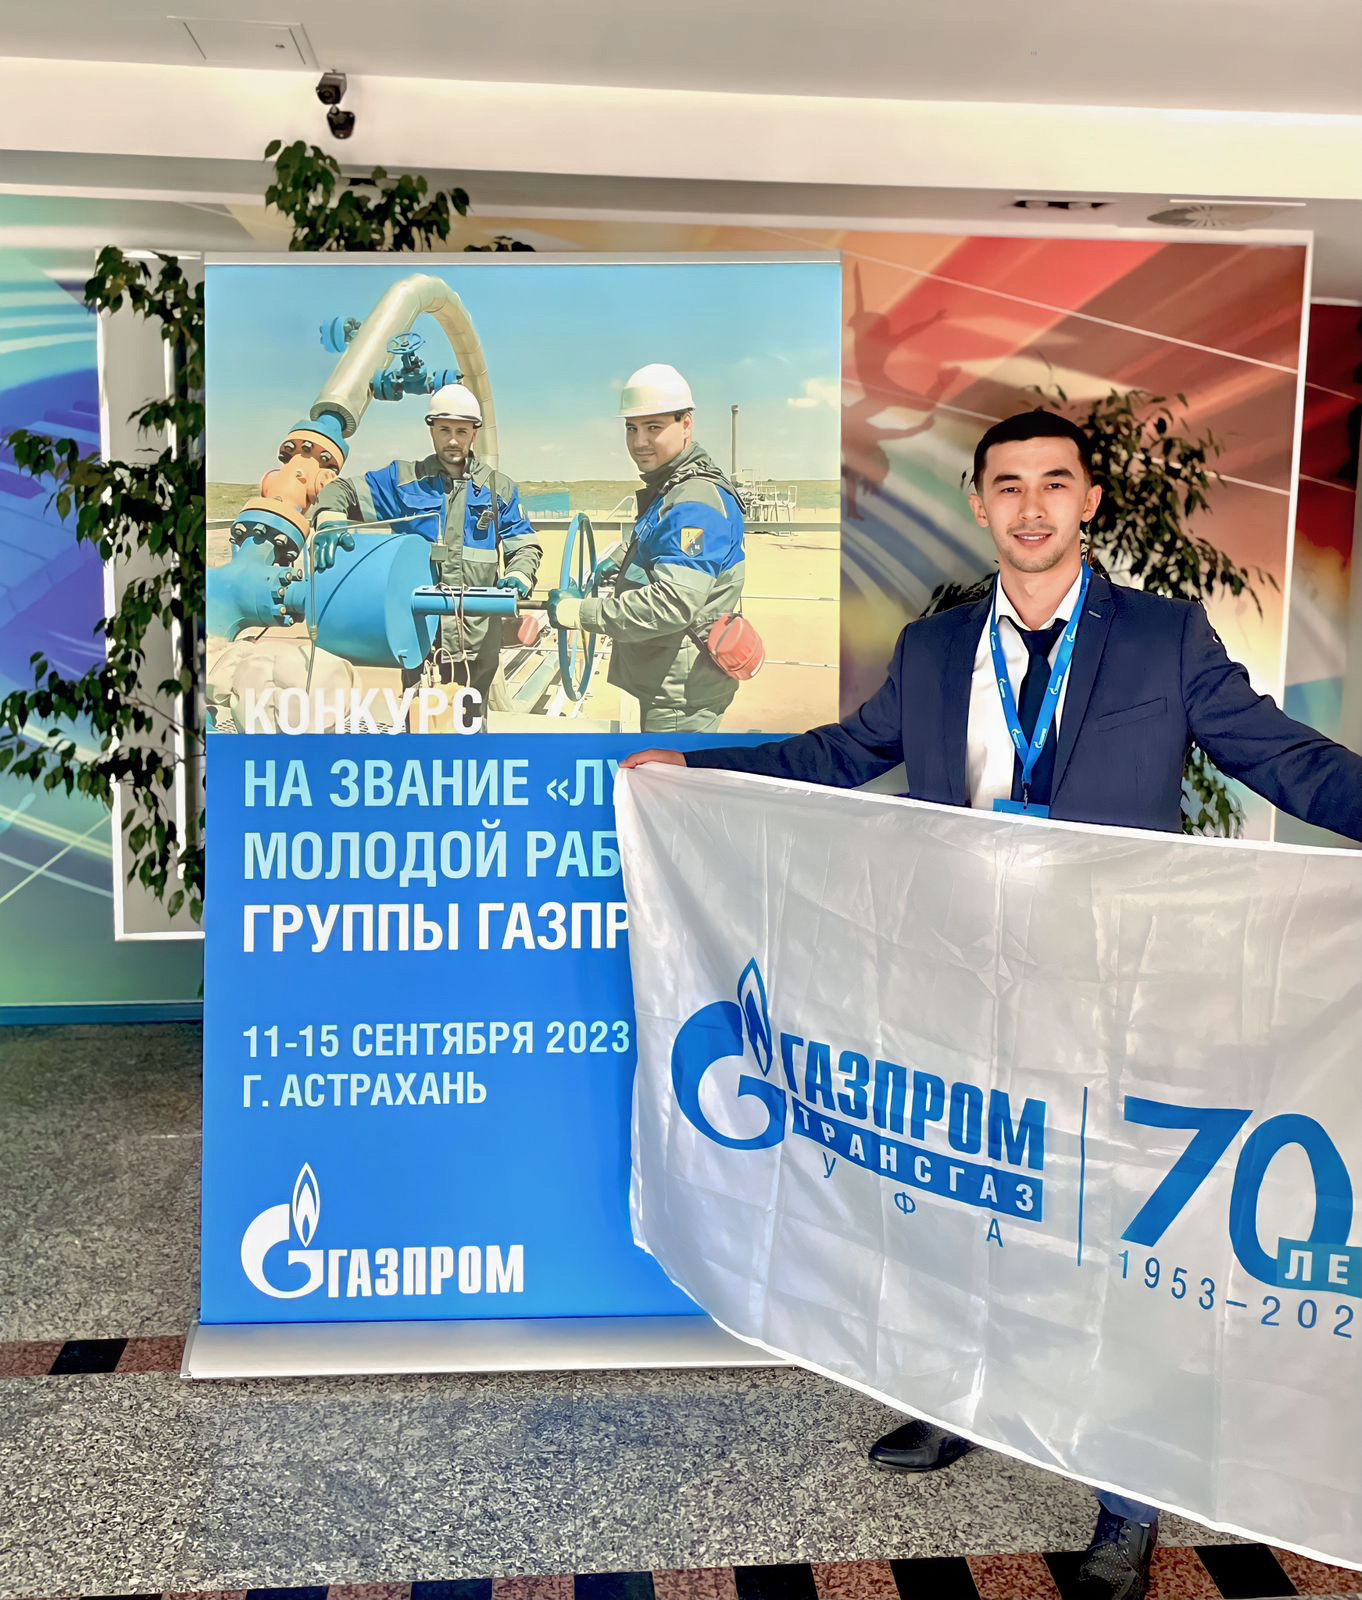 Стоимость газпрома 2023. Совет директоров Газпрома 2023. 30 Лет Газпрому в 2023.